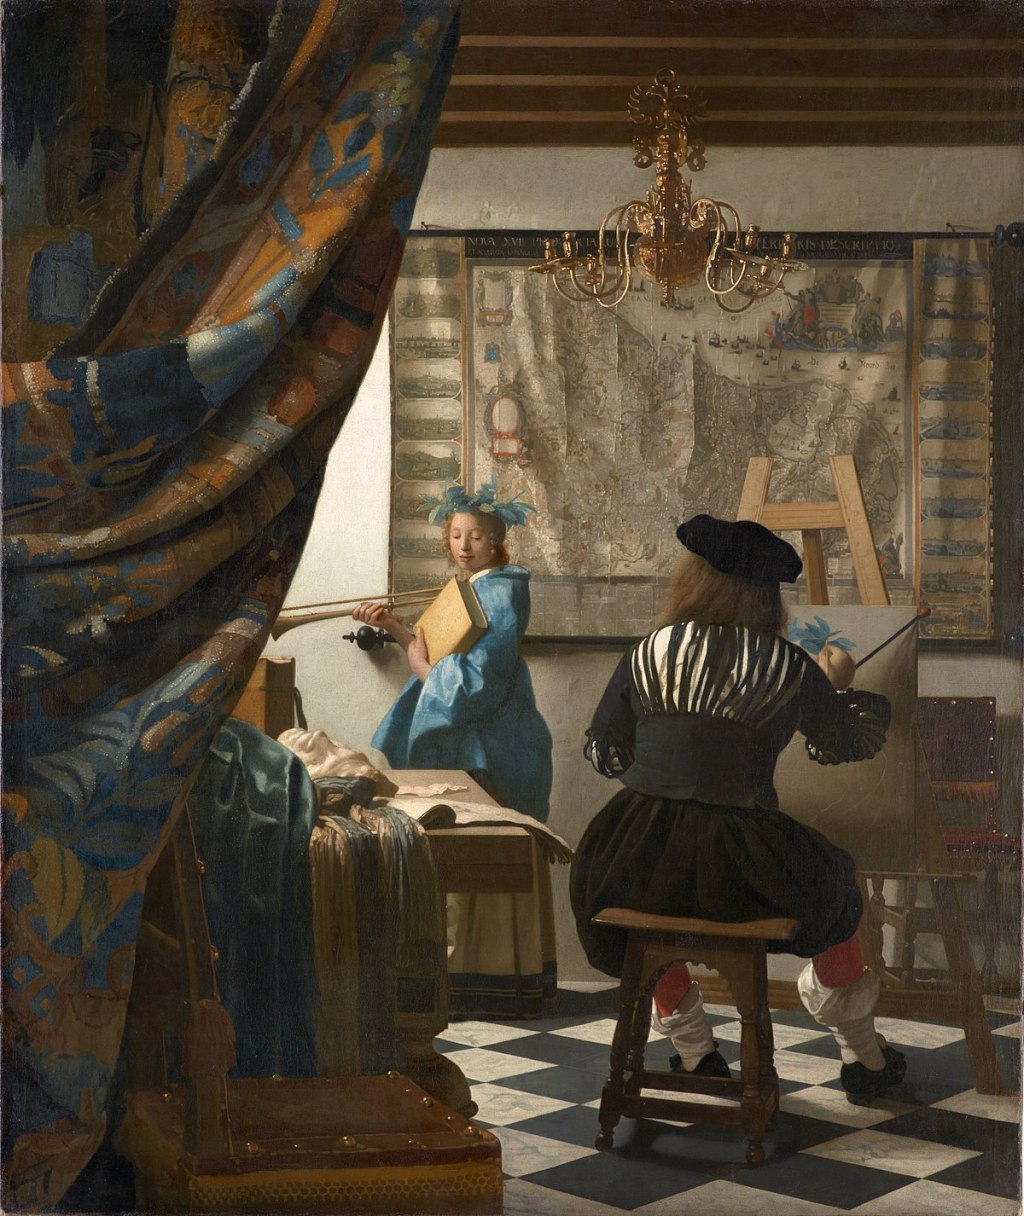 Homage to Art by Johannes Vermeer